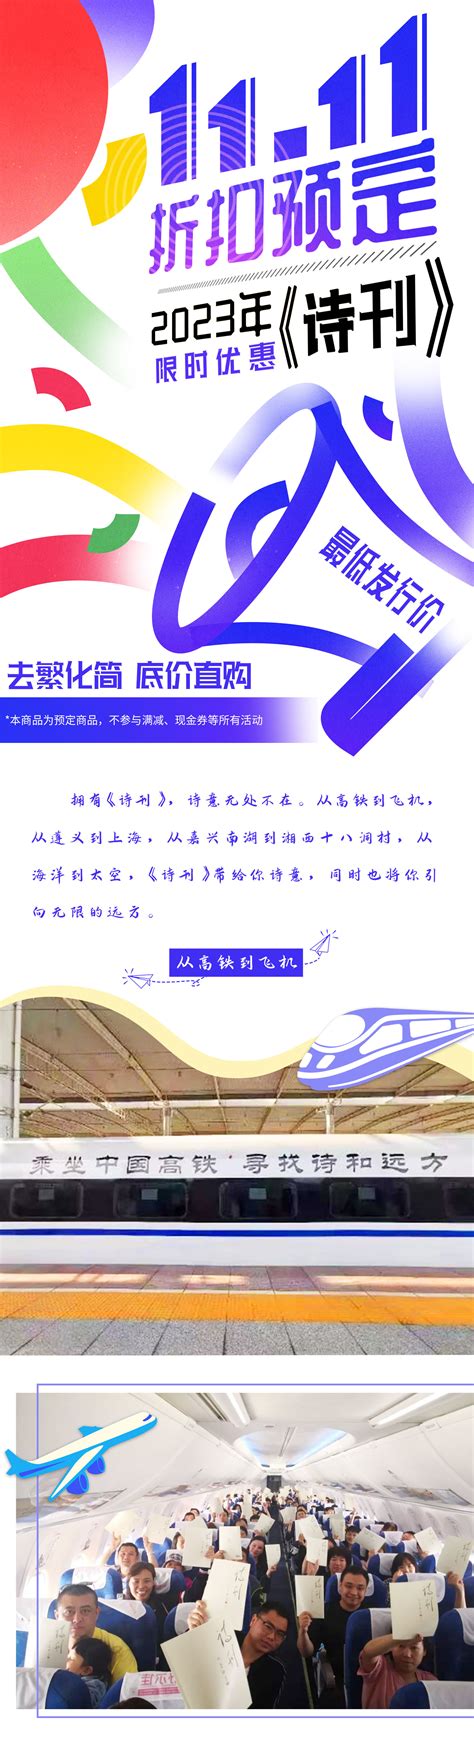 订购2023年《诗刊》杂志-中国诗歌网诗意文创商城